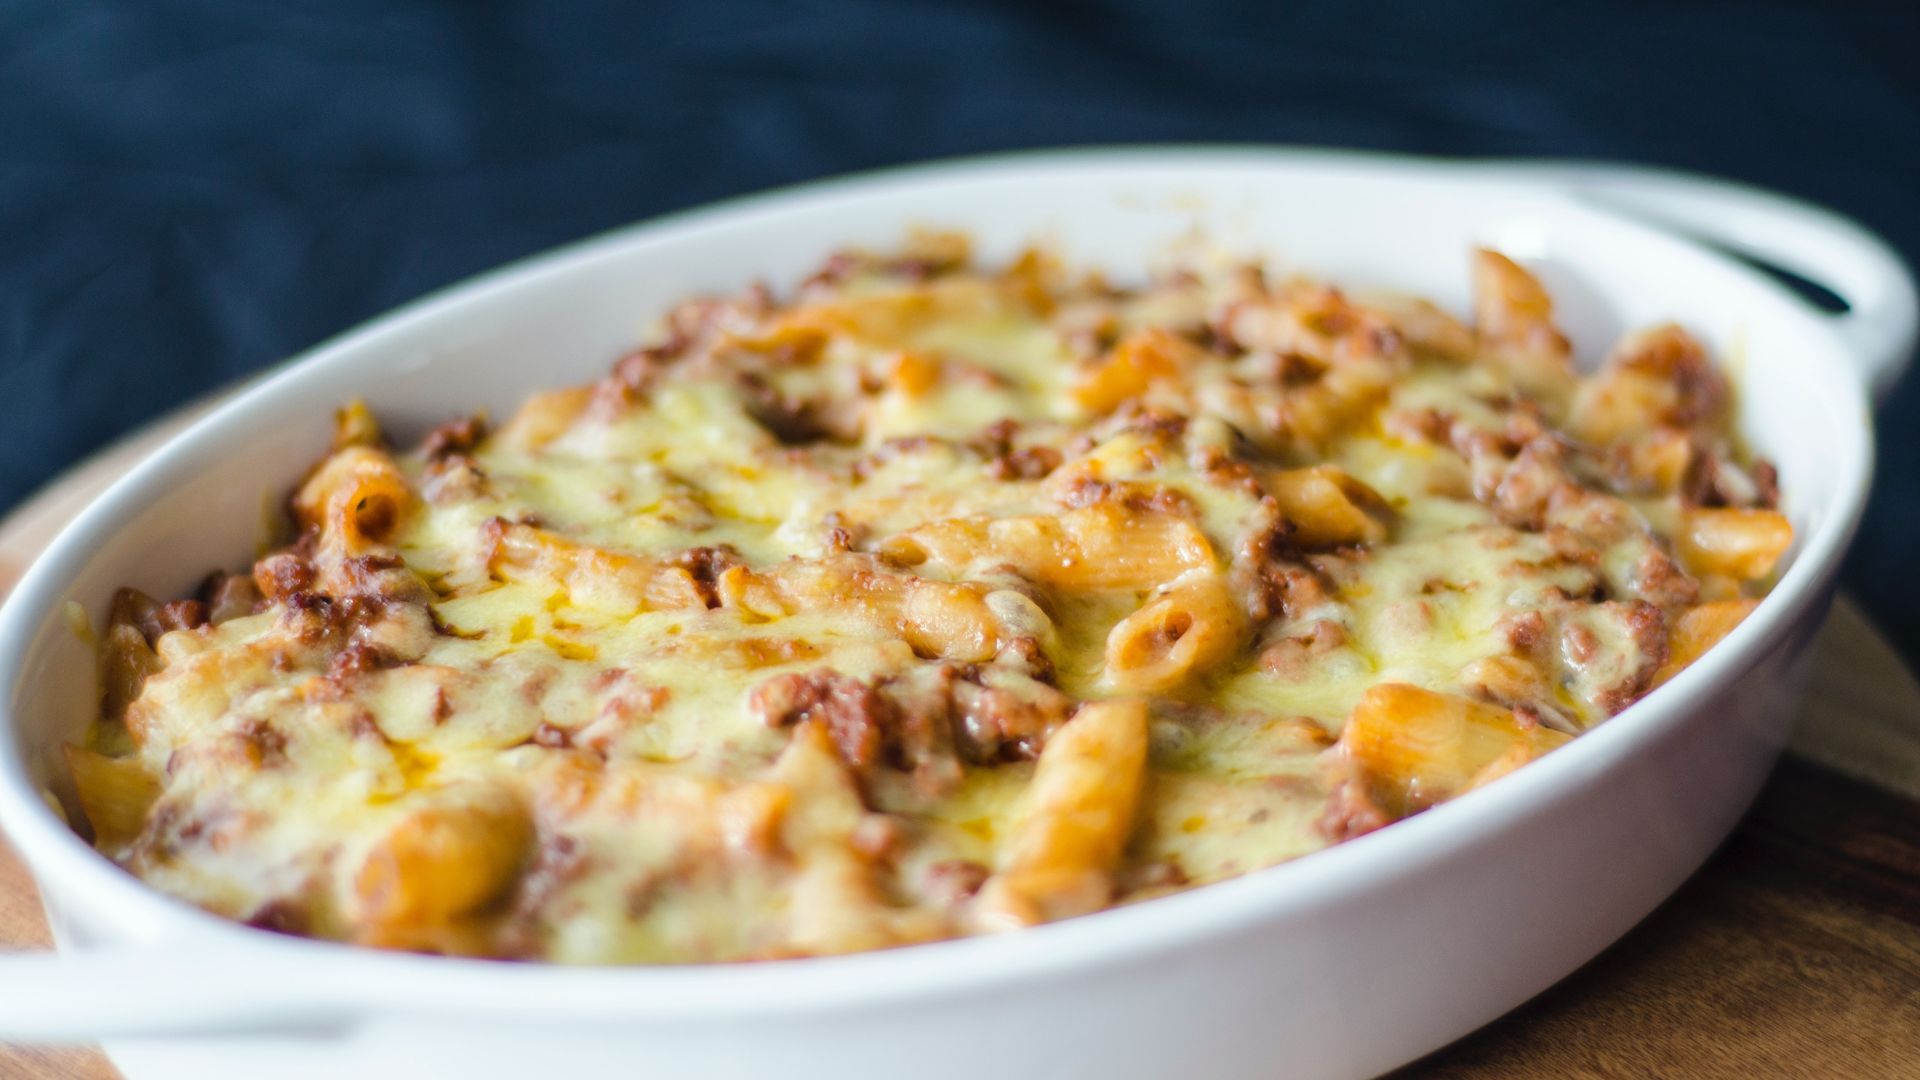 La recette facile (et authentique) du Mac and cheese, pour les soirs de flemme